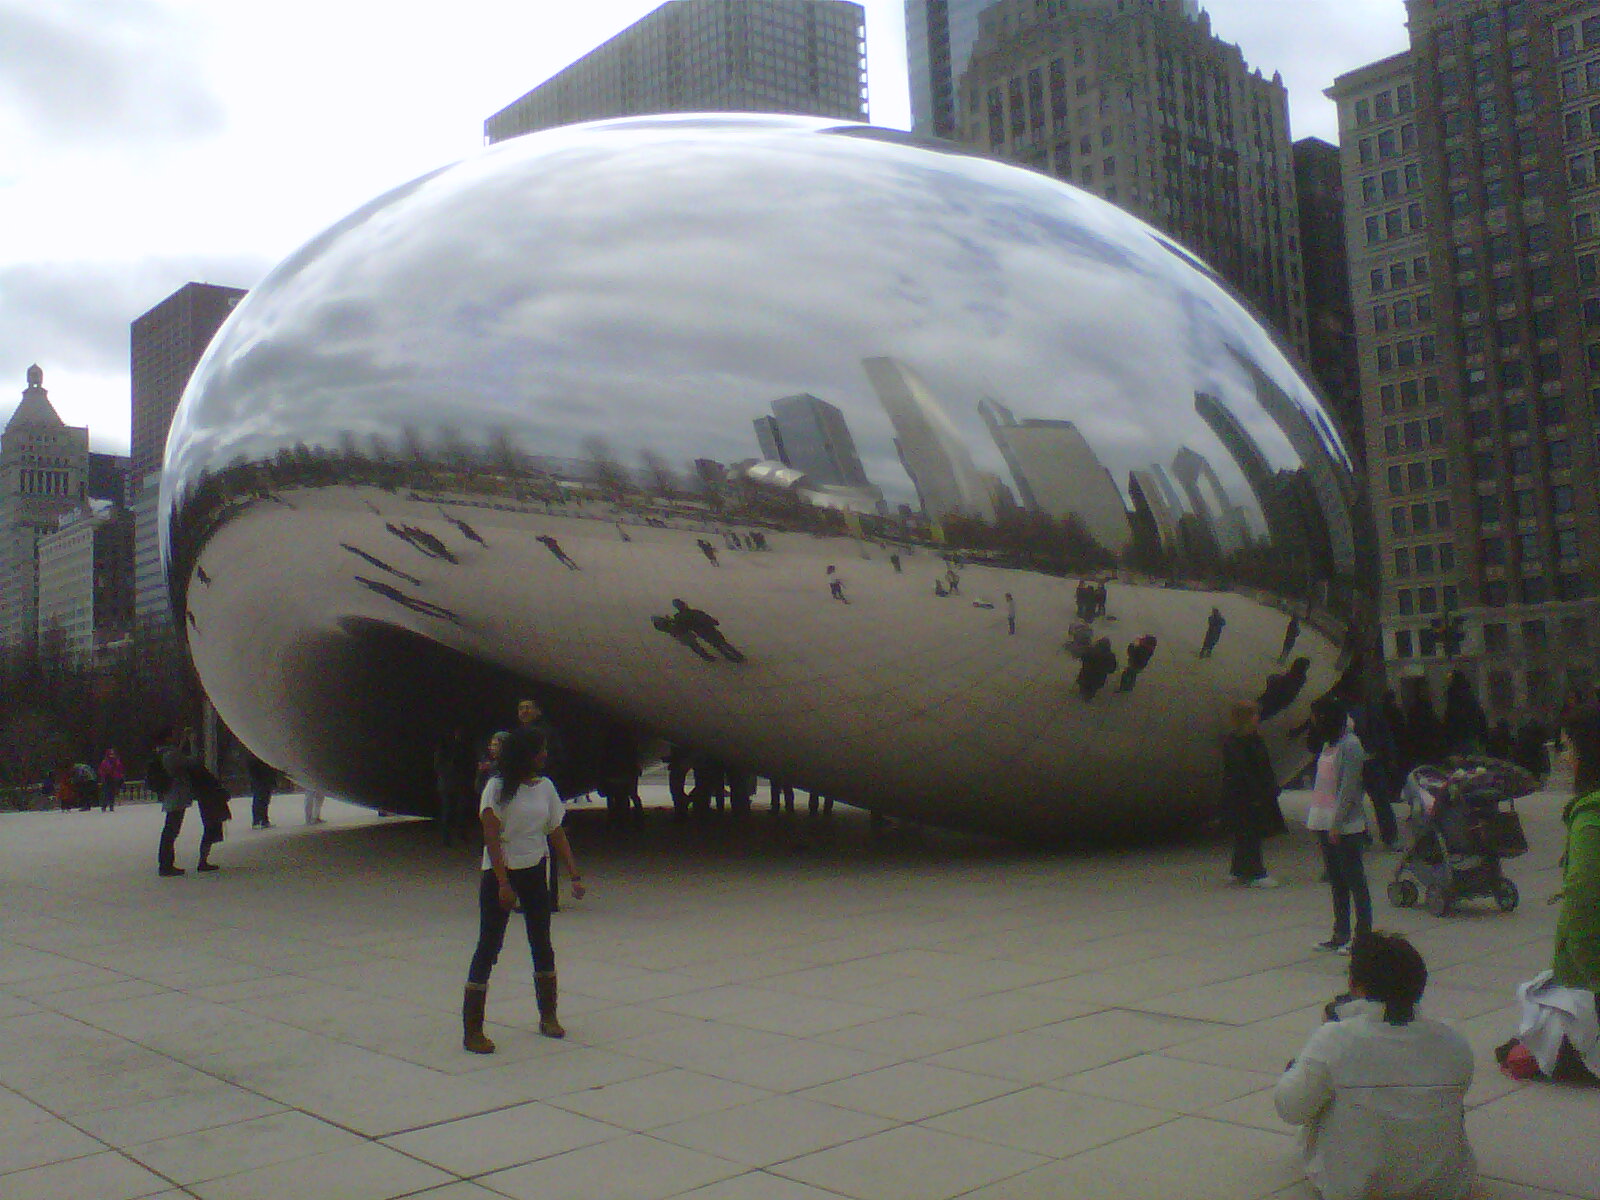 Cloud Gate sculpture, Millenium Park, Chicago, IL